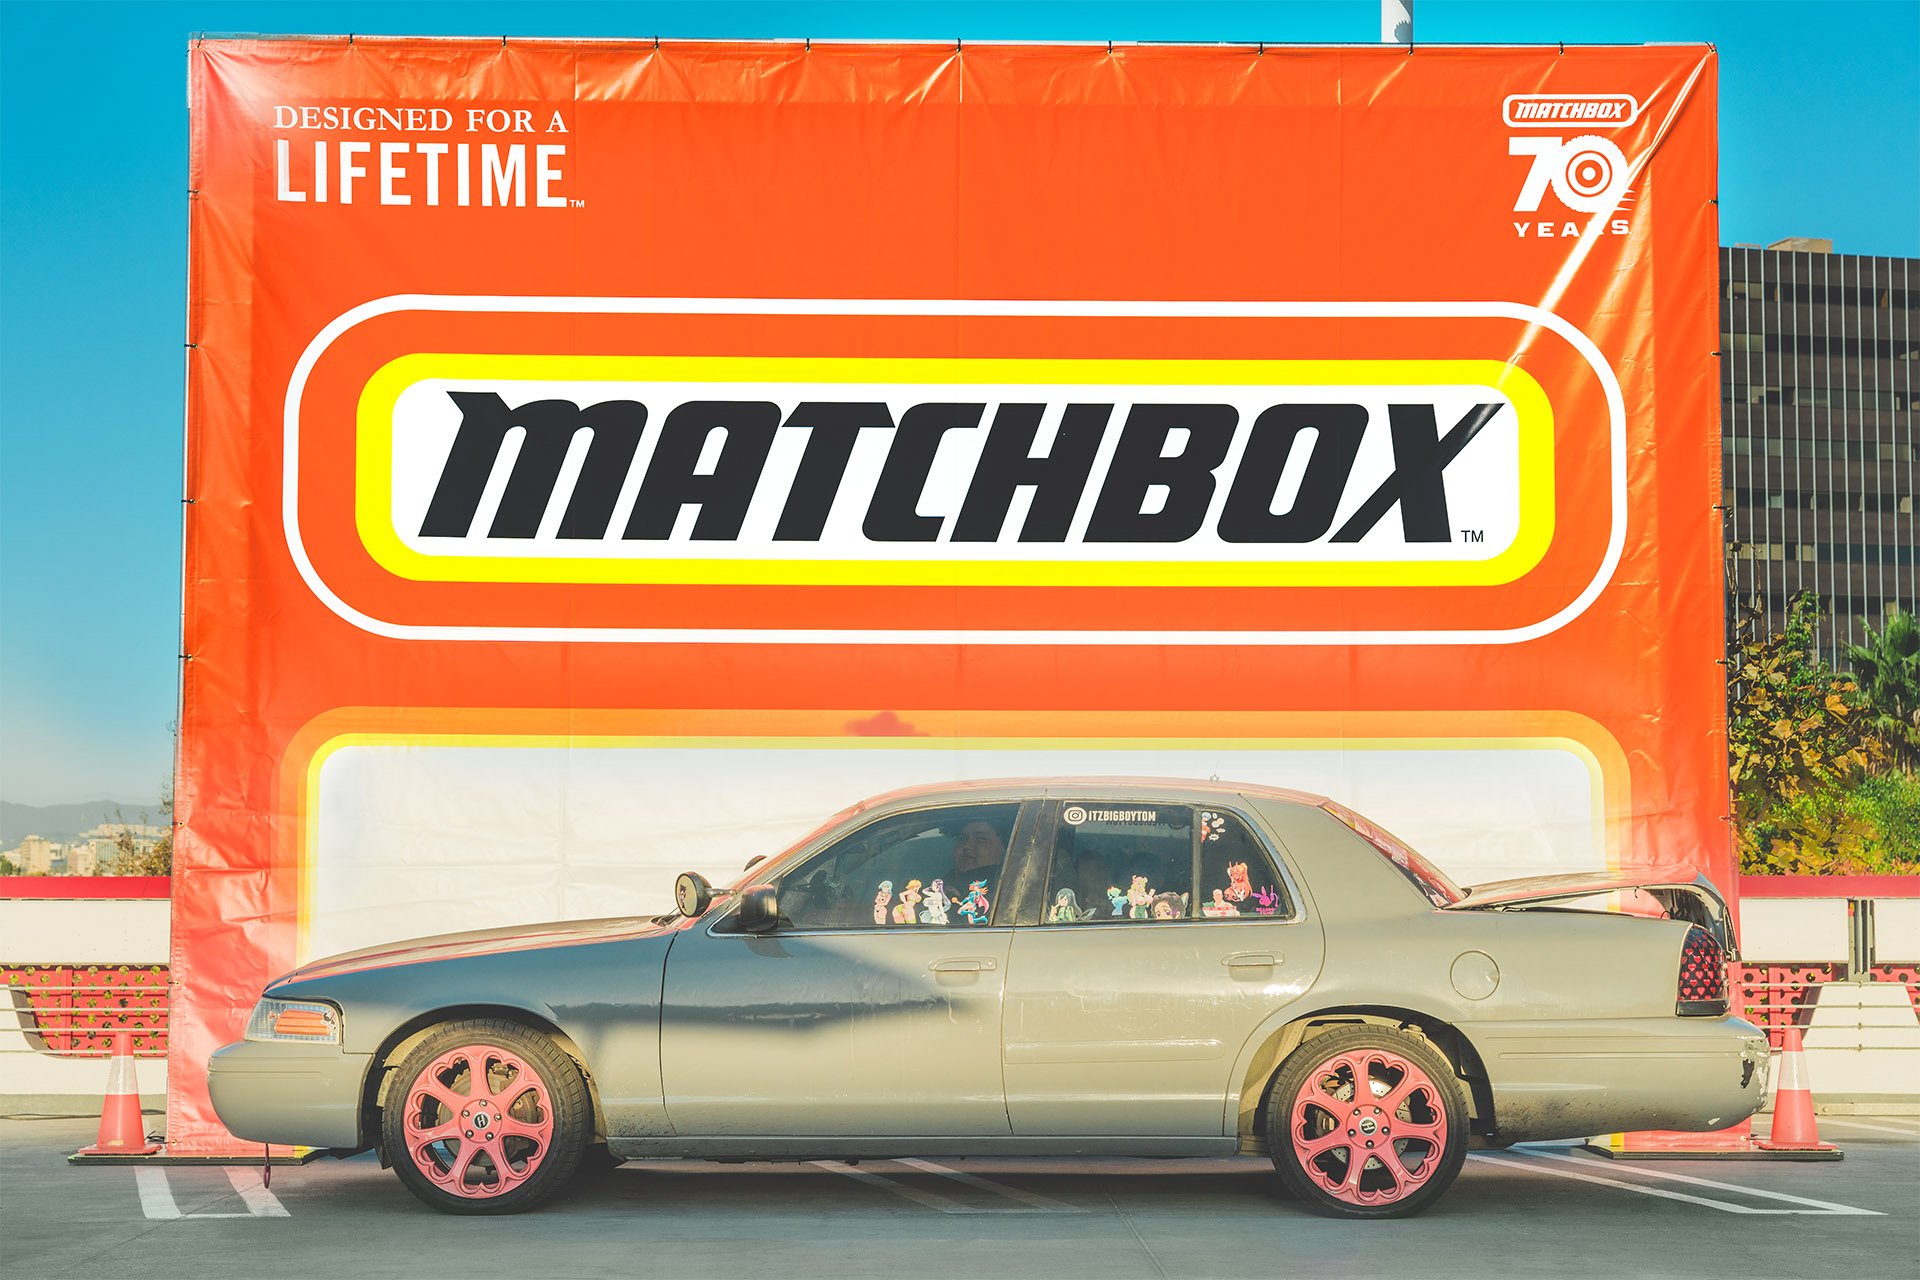 Petersen-Matchbox-Cruise-In-76.jpg